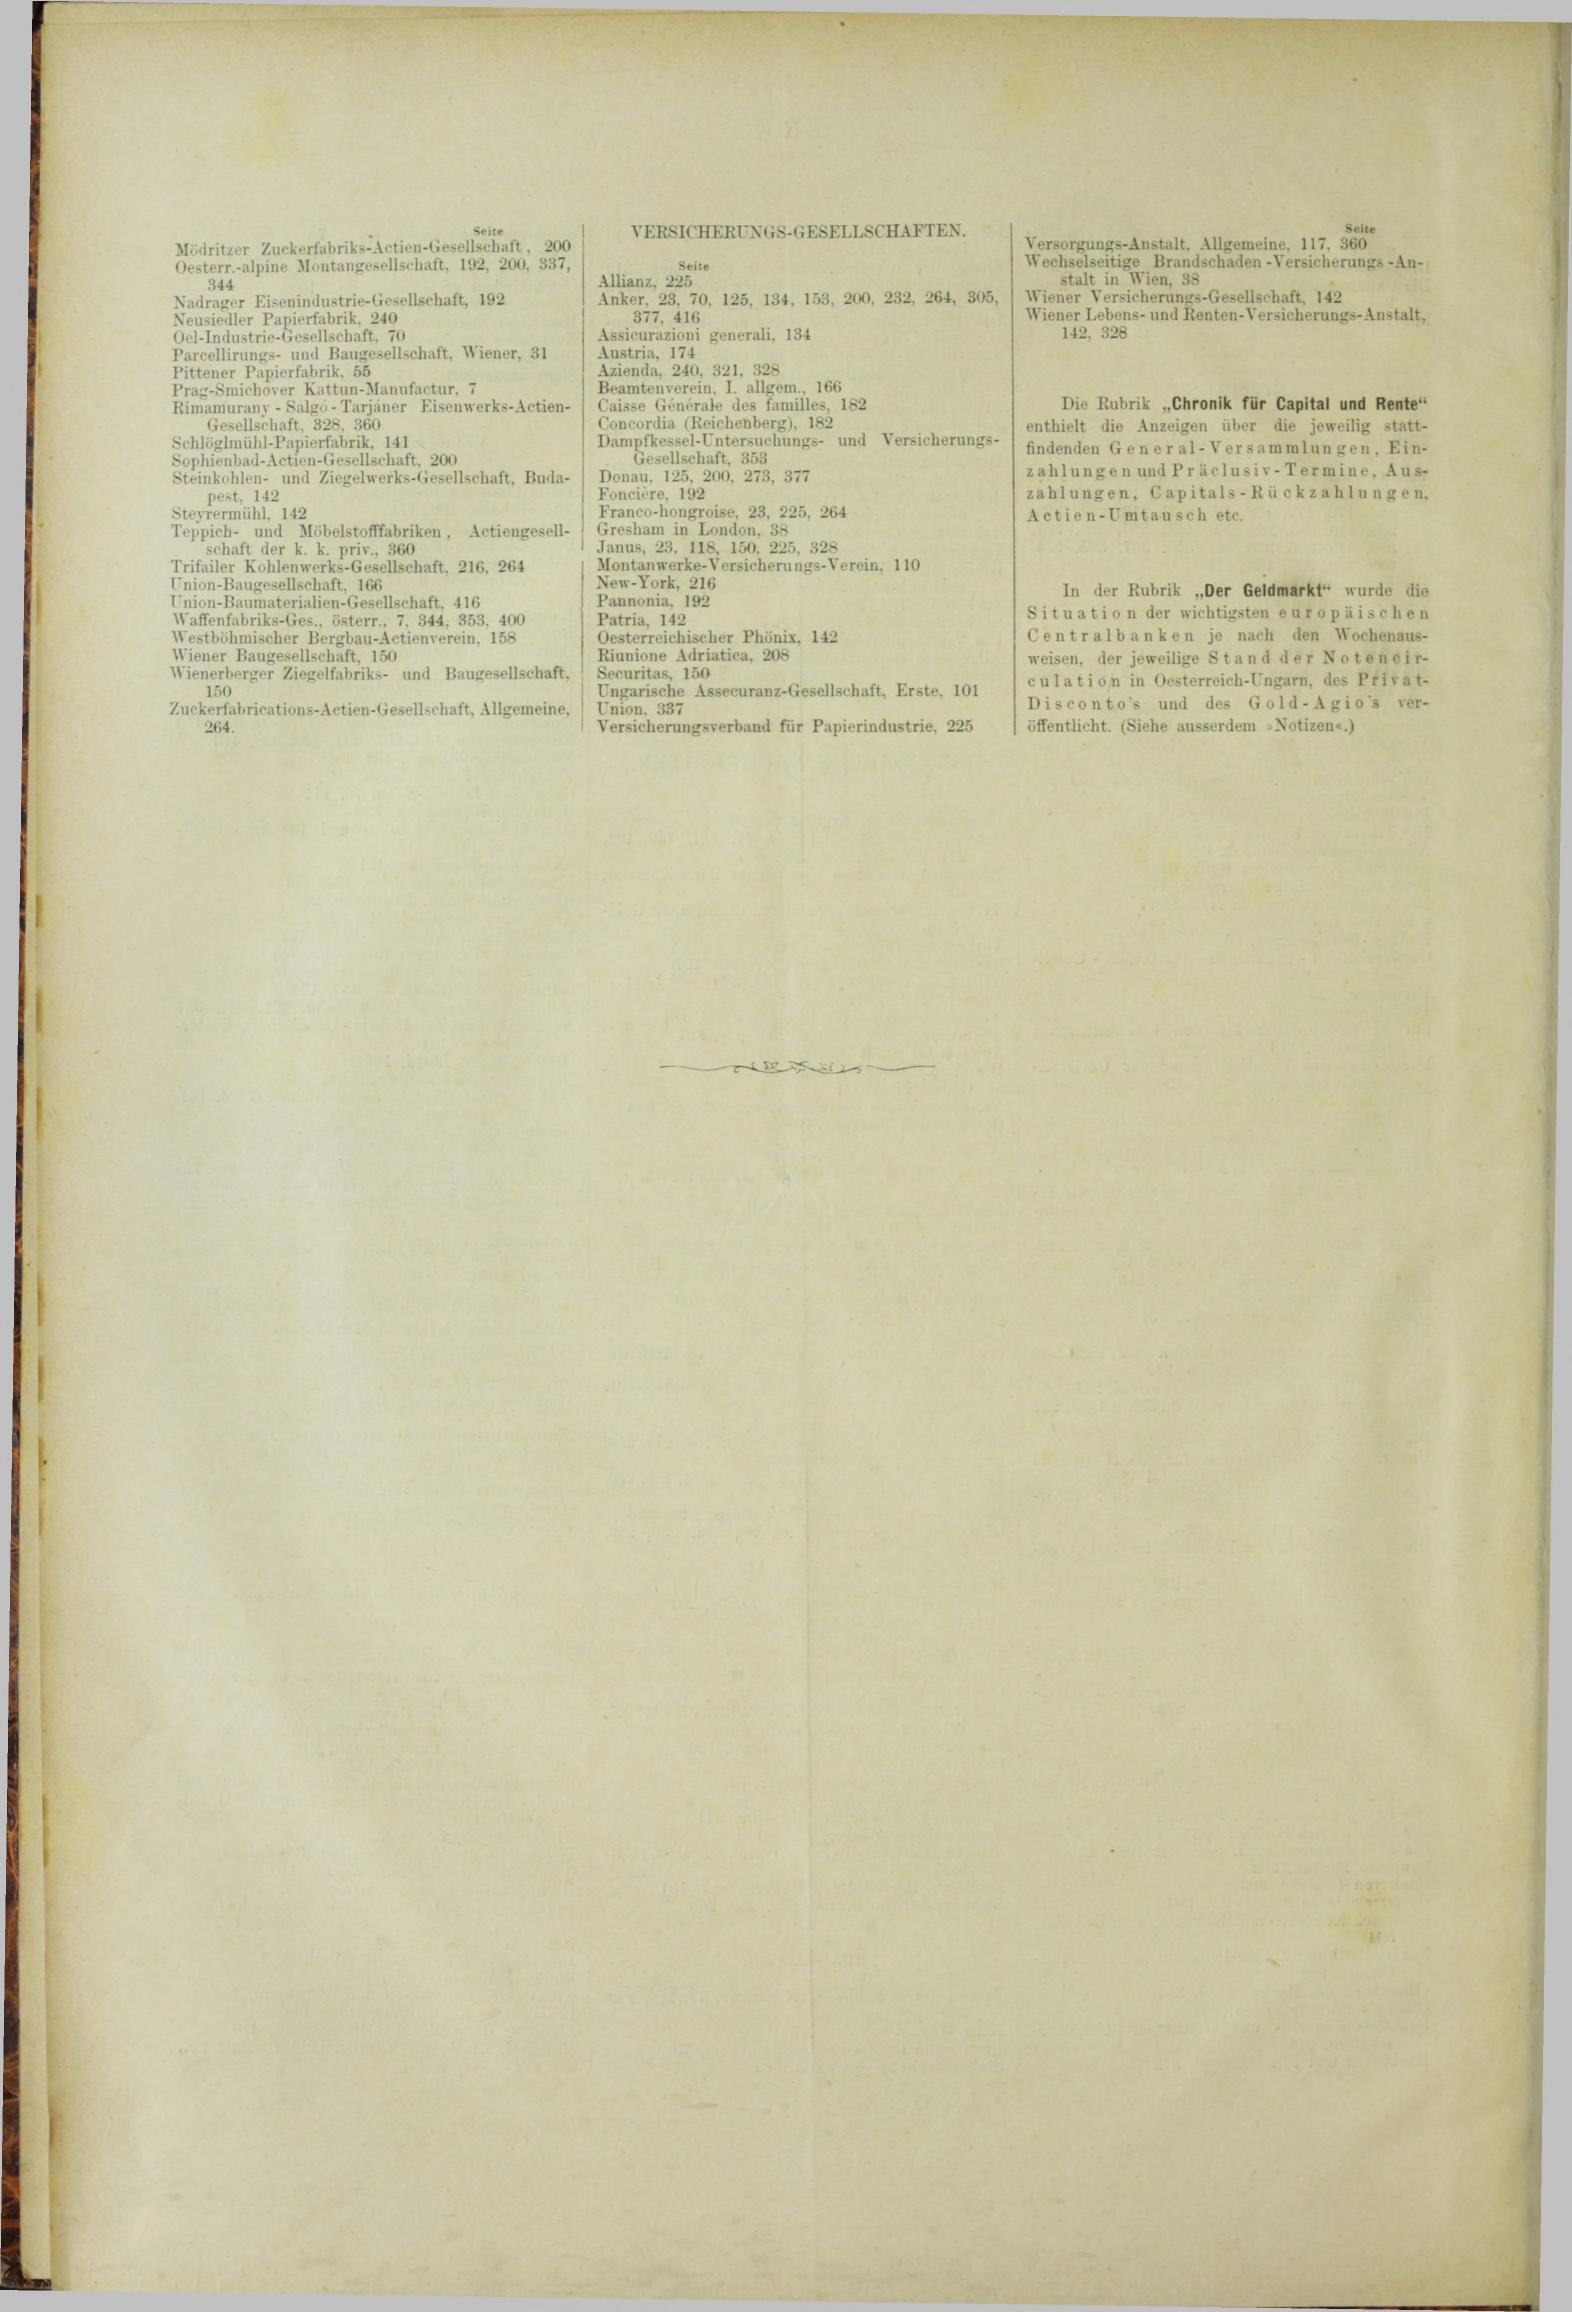 Der Tresor 18.10.1883 - Seite 12